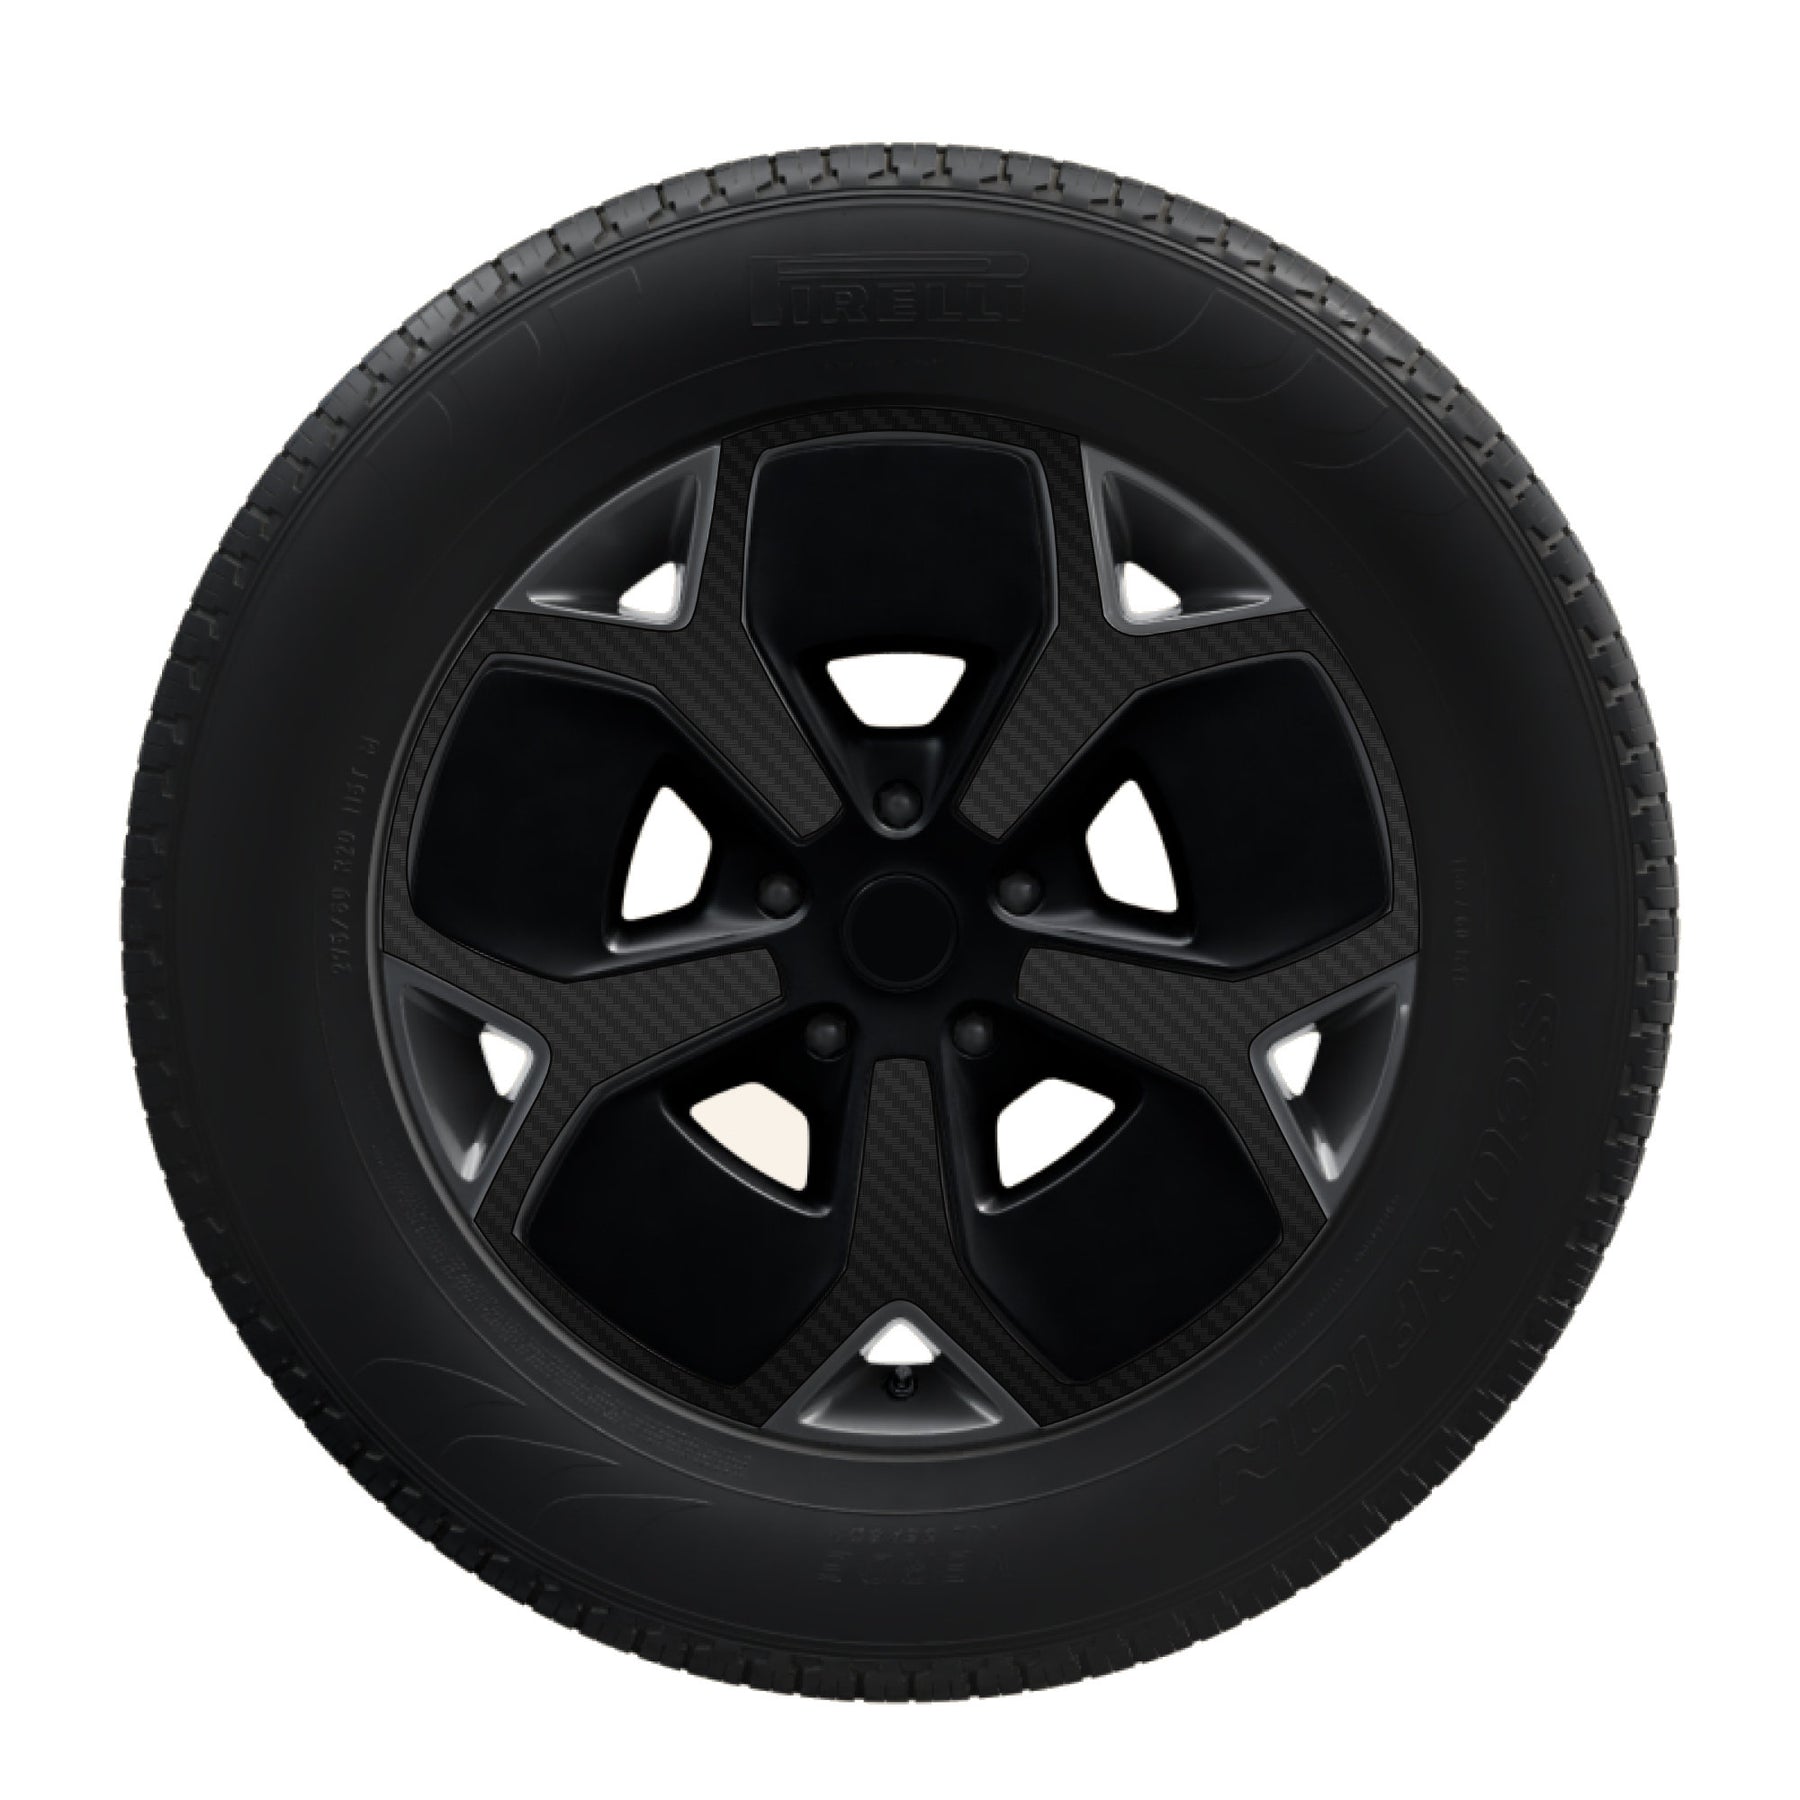 Black Carbon Fiber Vinyl Spoke Decals for Rivian 21" Road Wheels